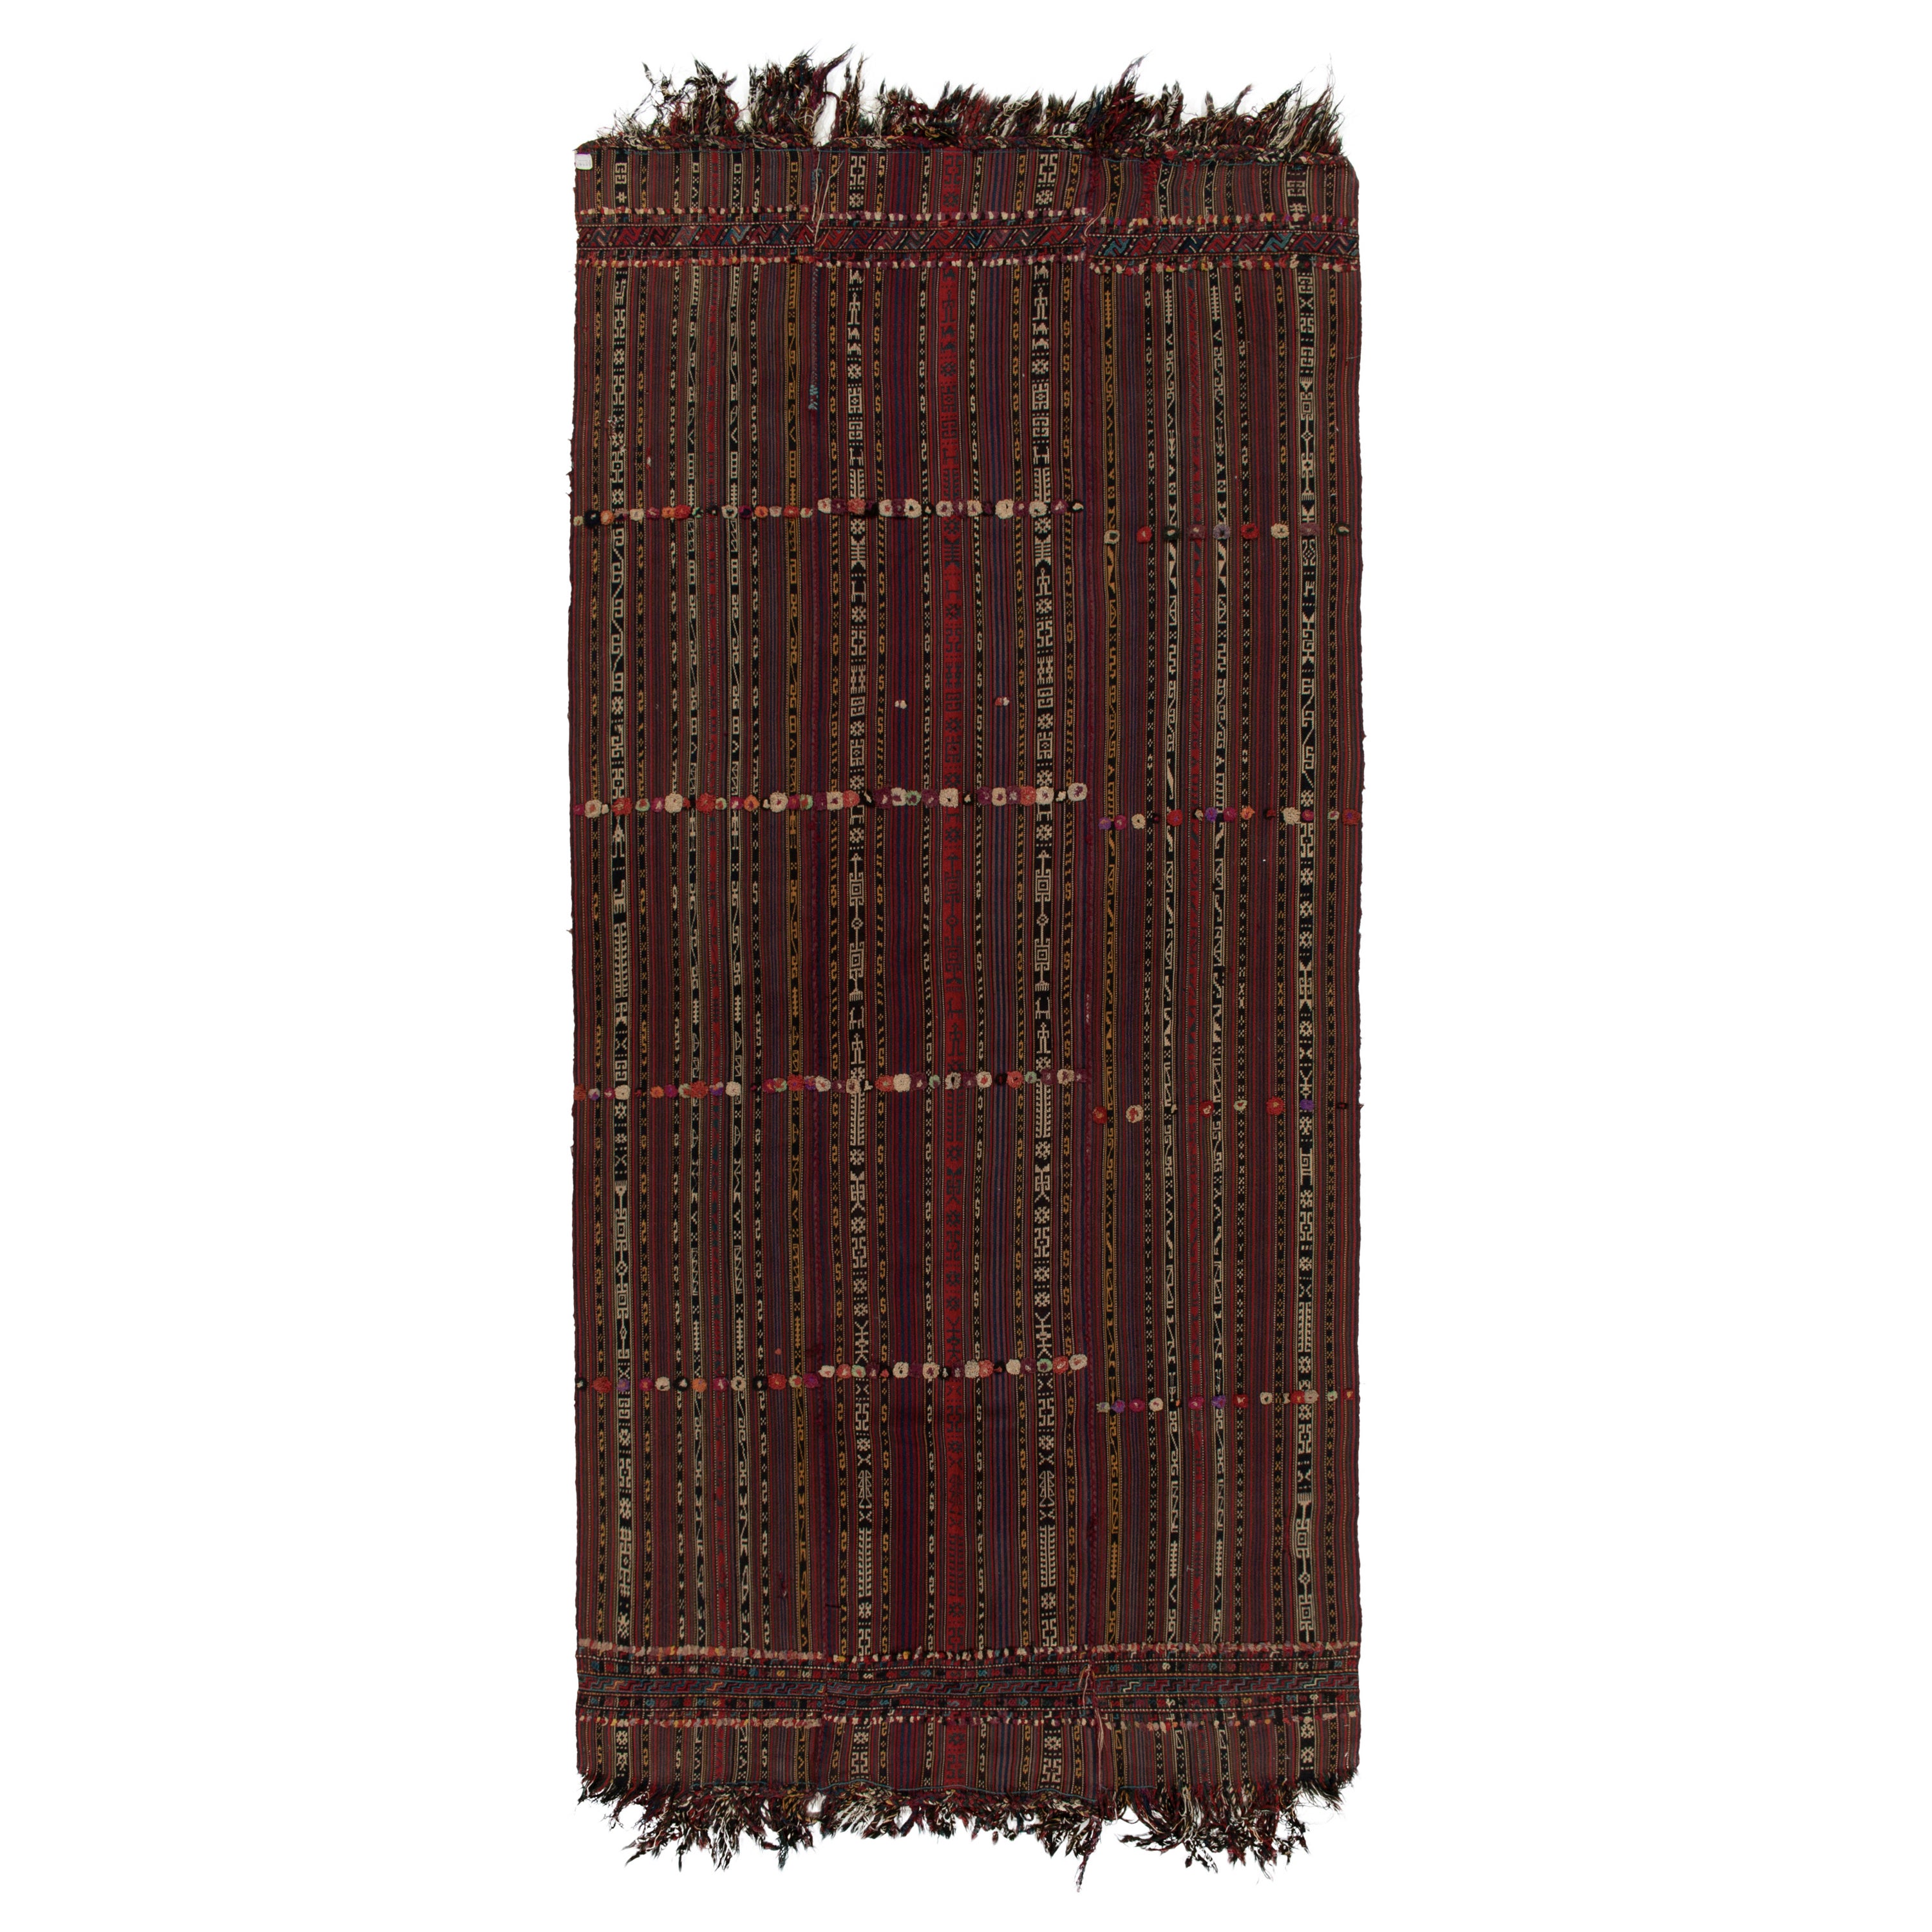 1950s Vintage Persian Kilim Rug inRed & Brown Geometric Pattern by Rug & Kilim